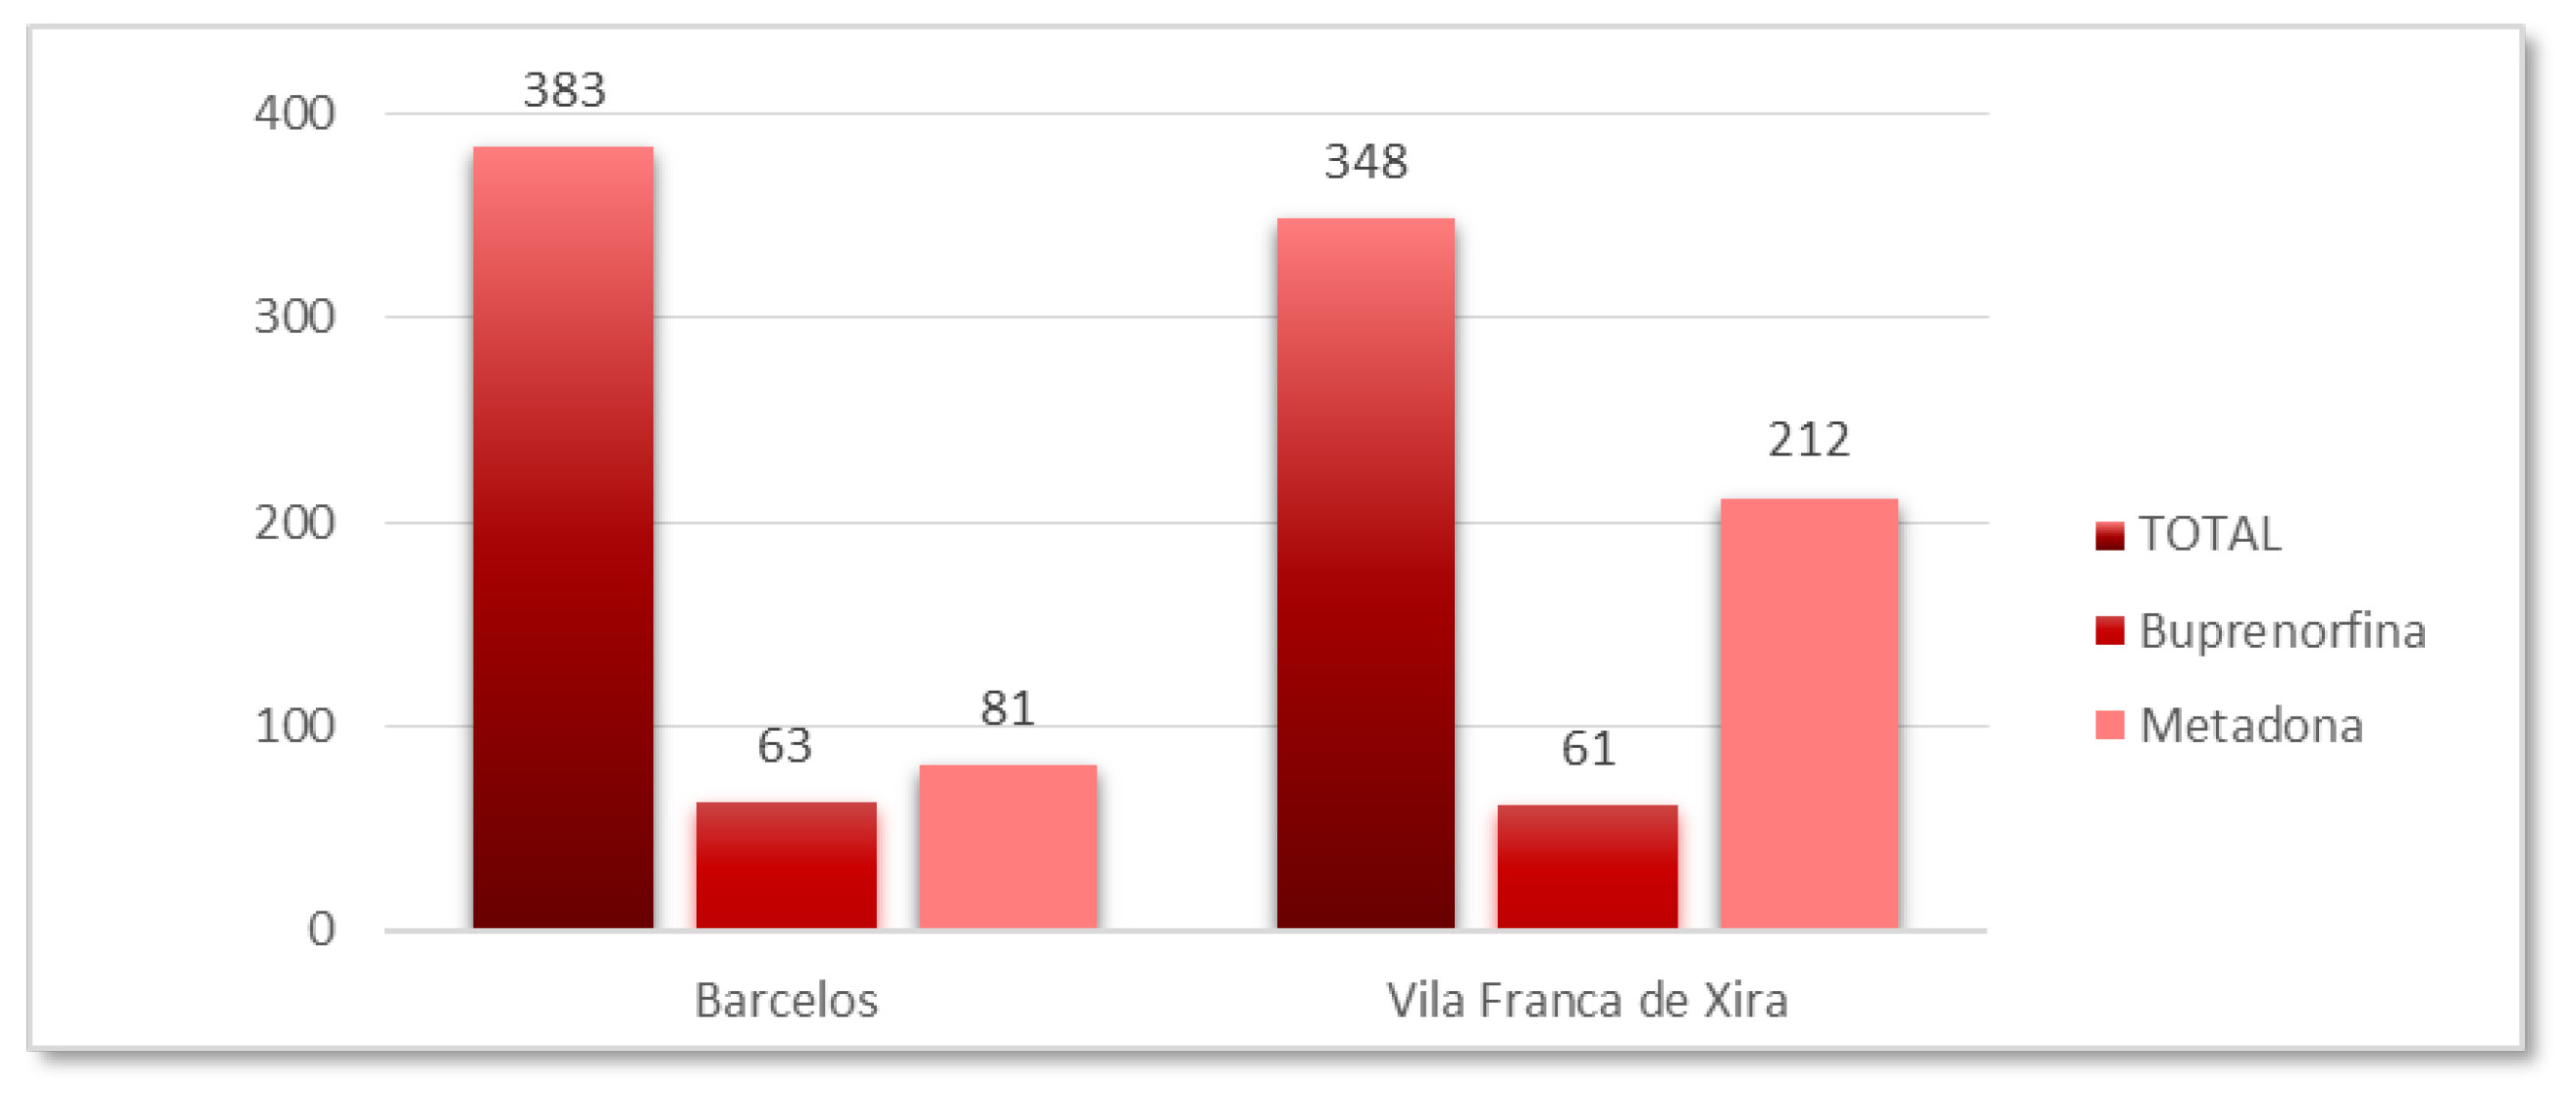 A sua implementação decorreu através de Centros de Consultas, em Vila Franca de Xira (N=348) e em Barcelos (N=383), respetivamente, através de uma intervenção integrada e concretizada sob a forma de